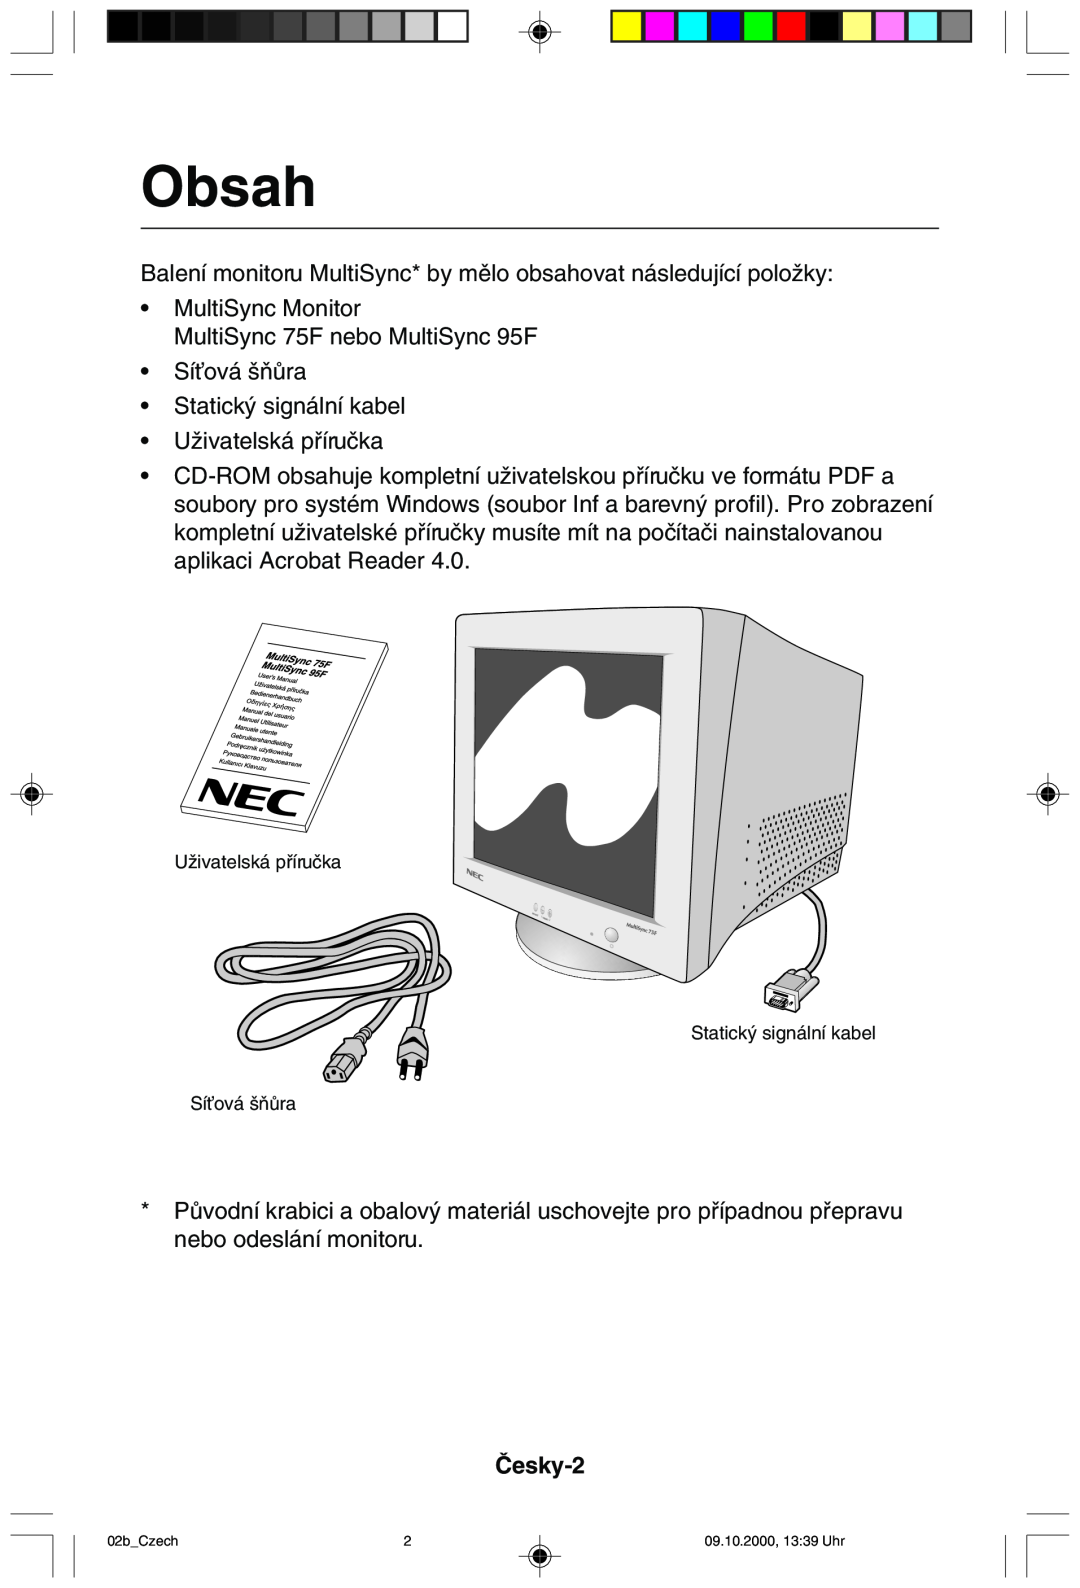 NEC 95F user manual Obsah, âesky-2 